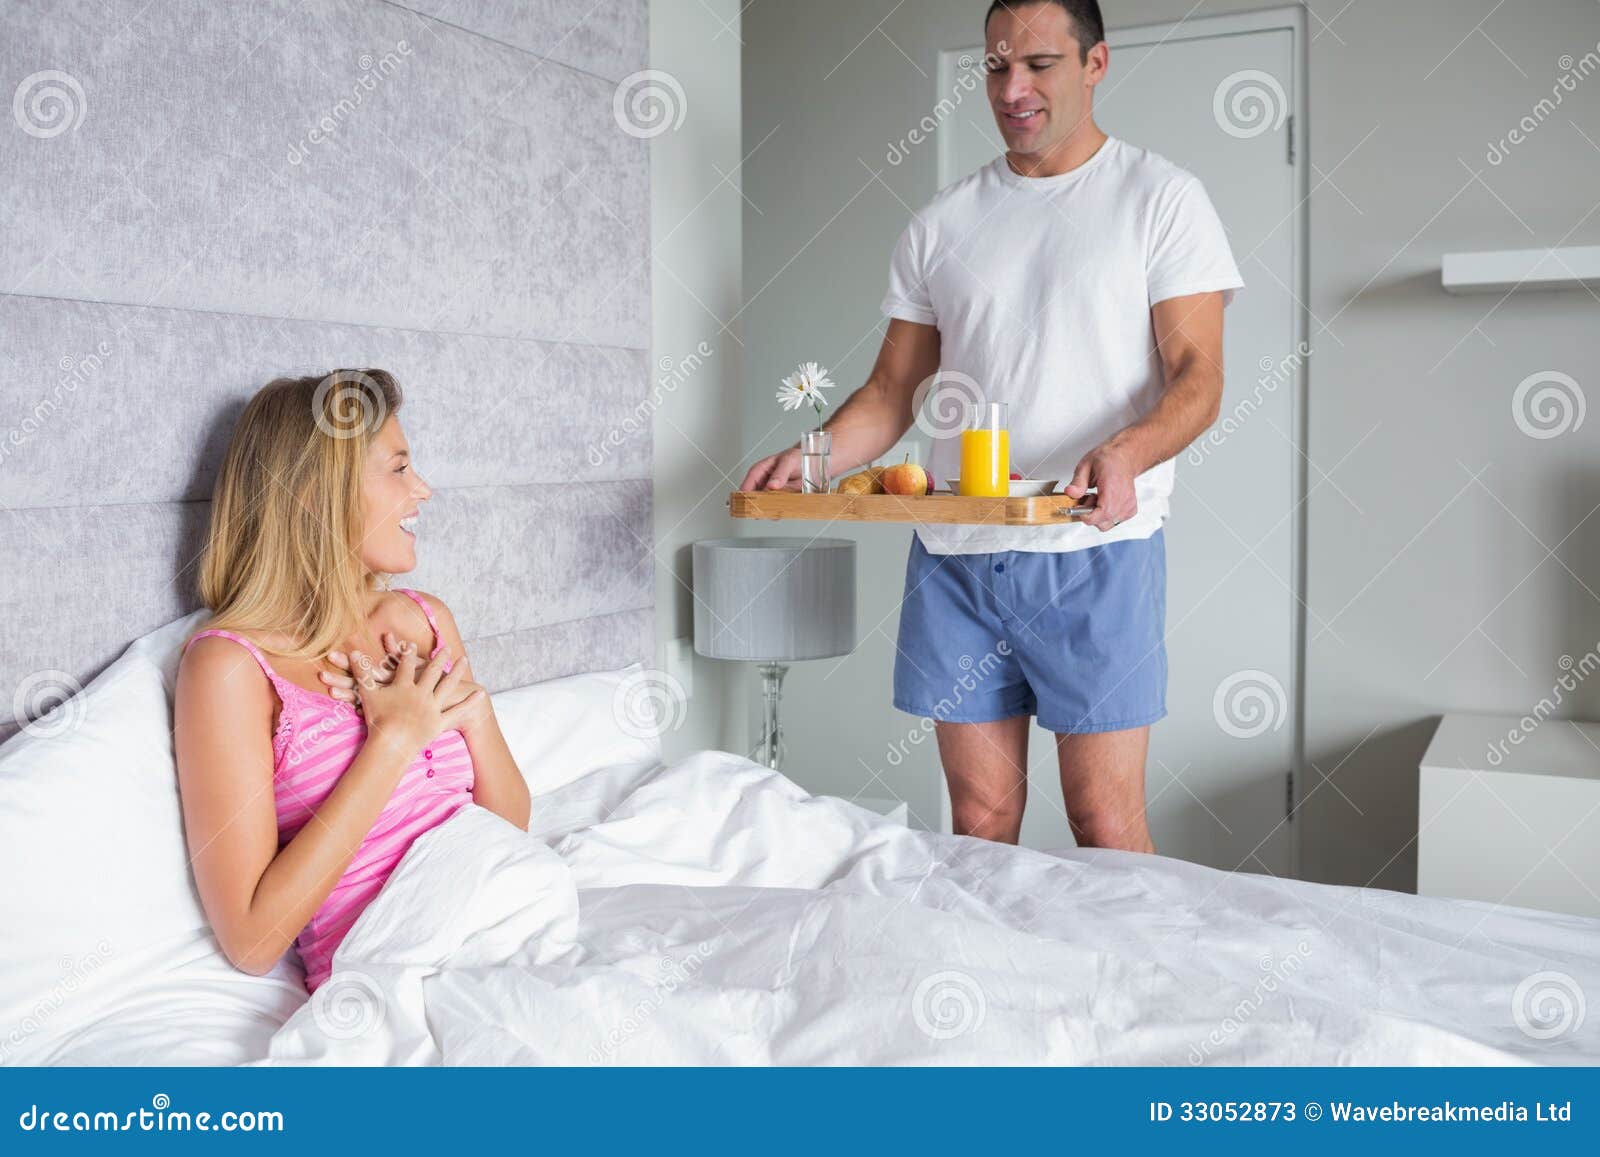 Принесла мужу видео. Мужчина приносит завтрак в постель. Счастливая женщина завтрак в постель. Мужчина приносит кофе в постель. Девушка приносит завтрак в постель.